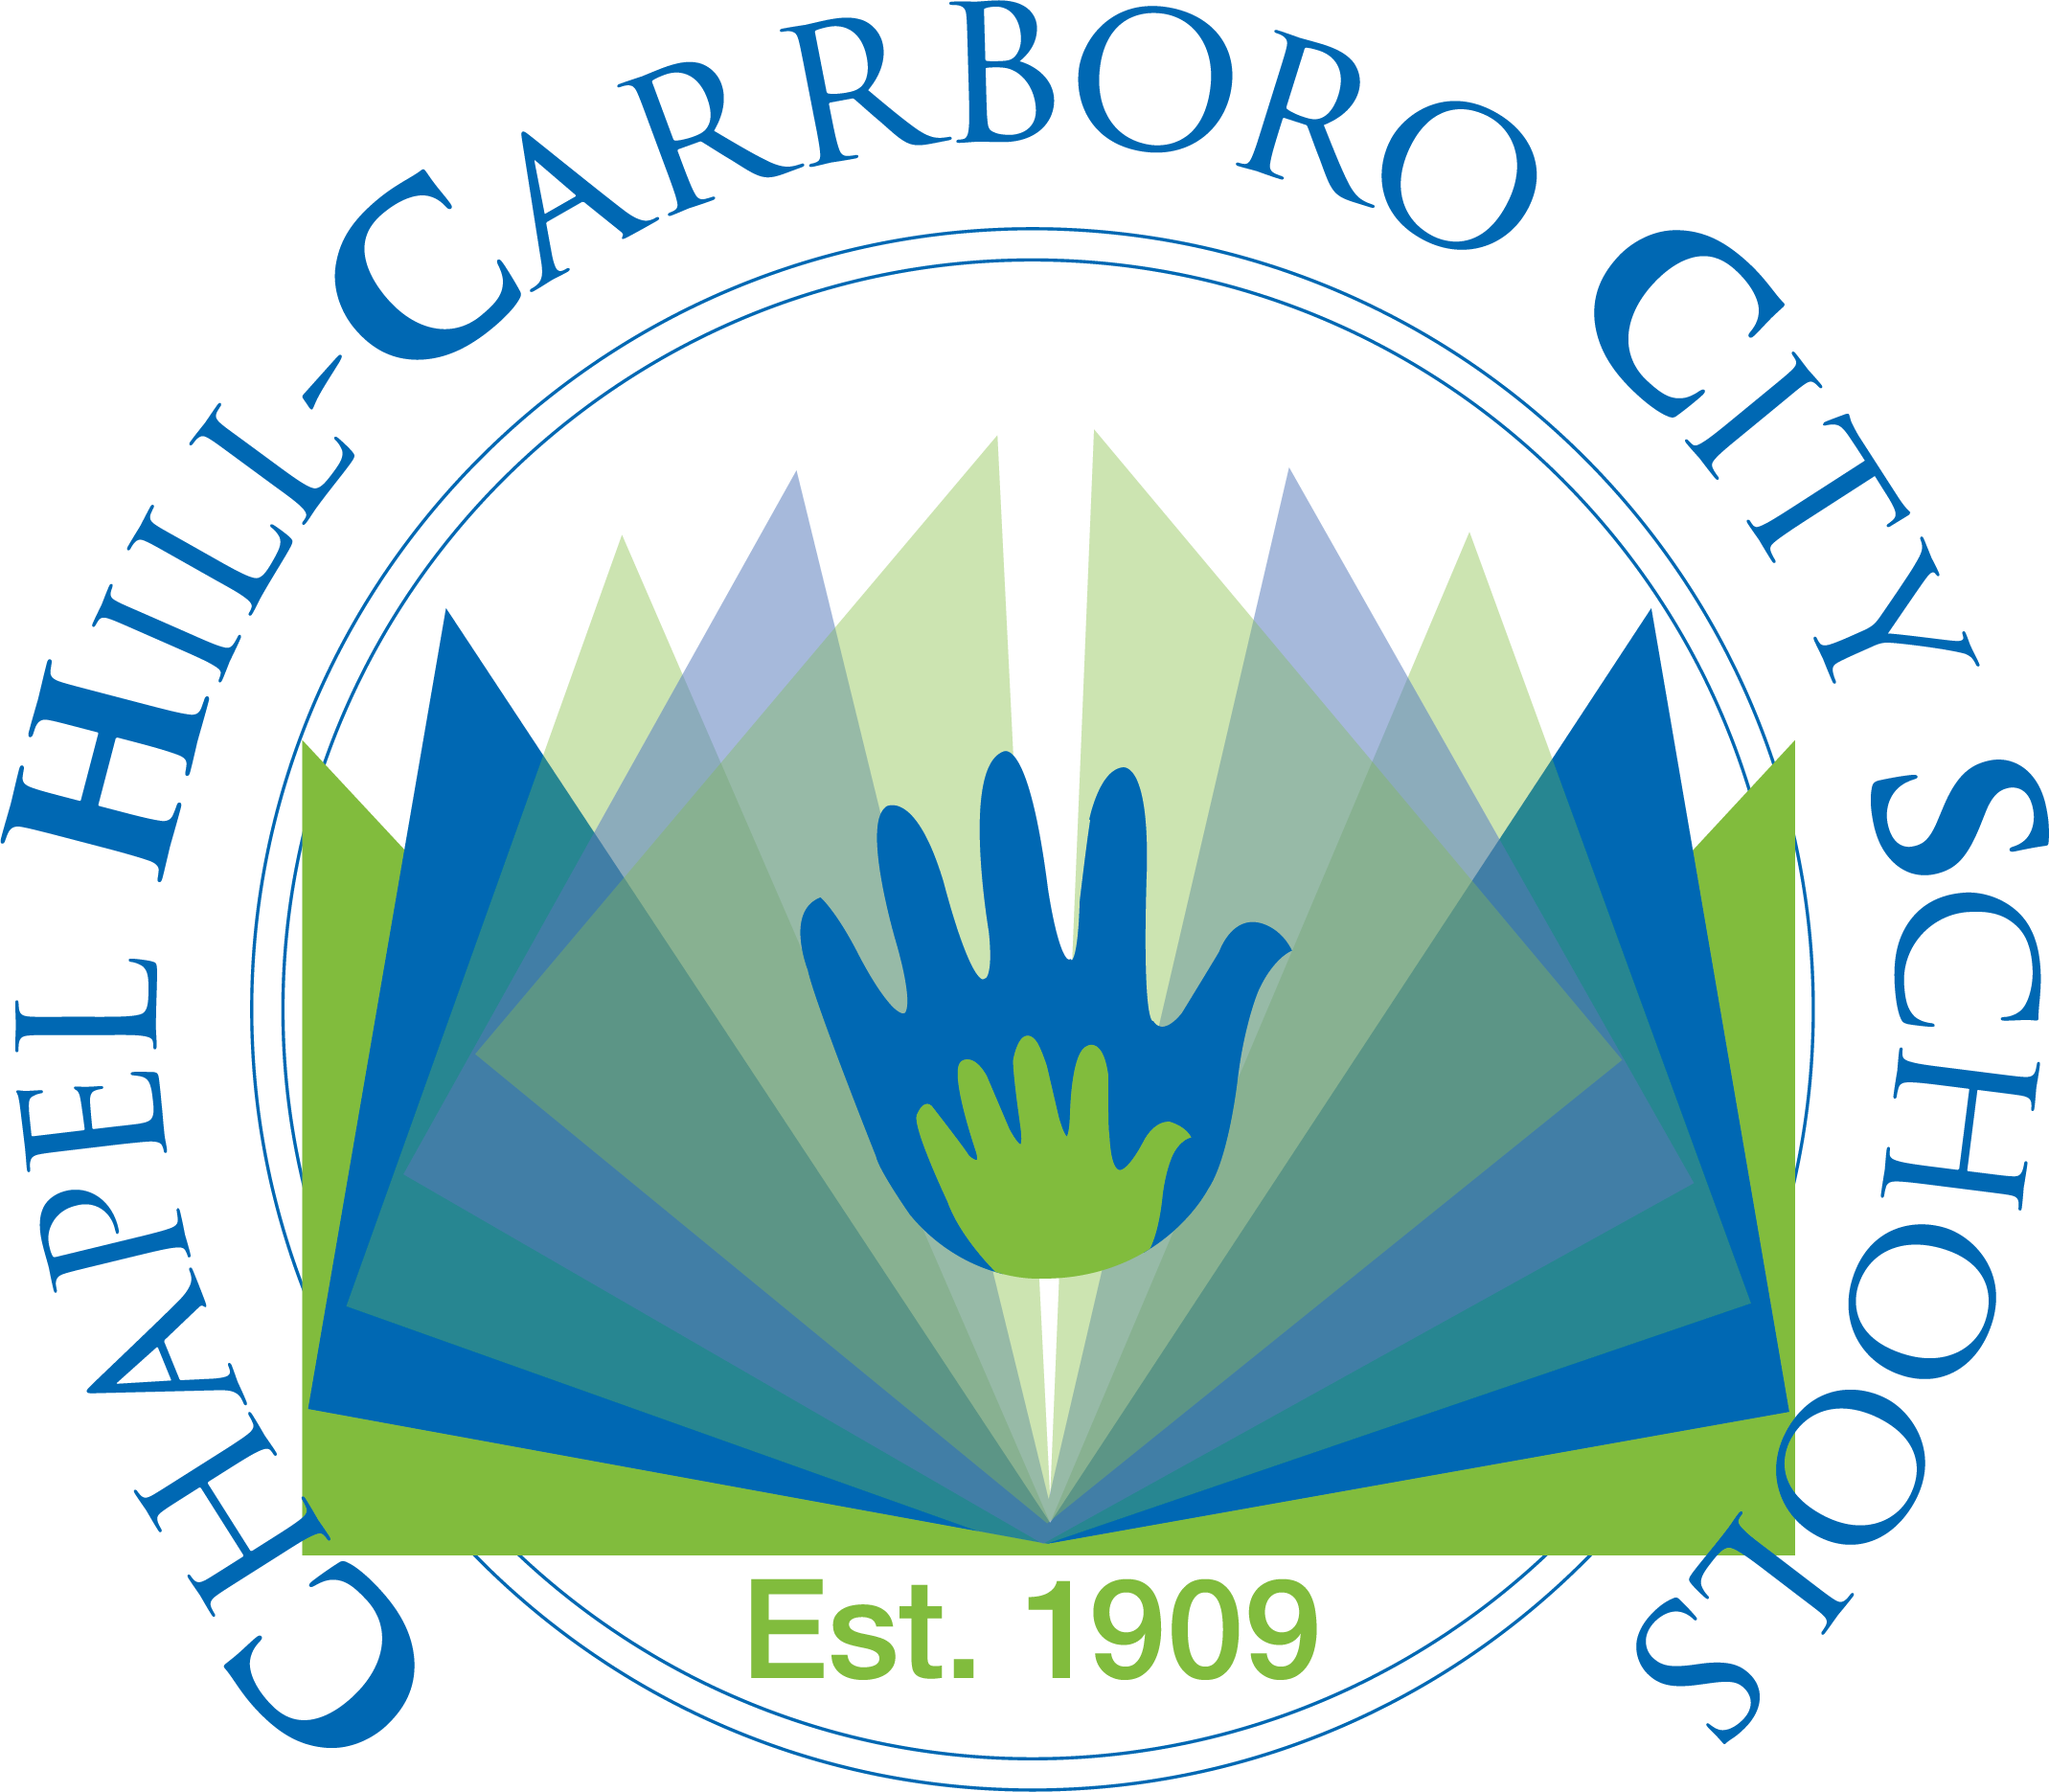 CHCCS logo vector.png